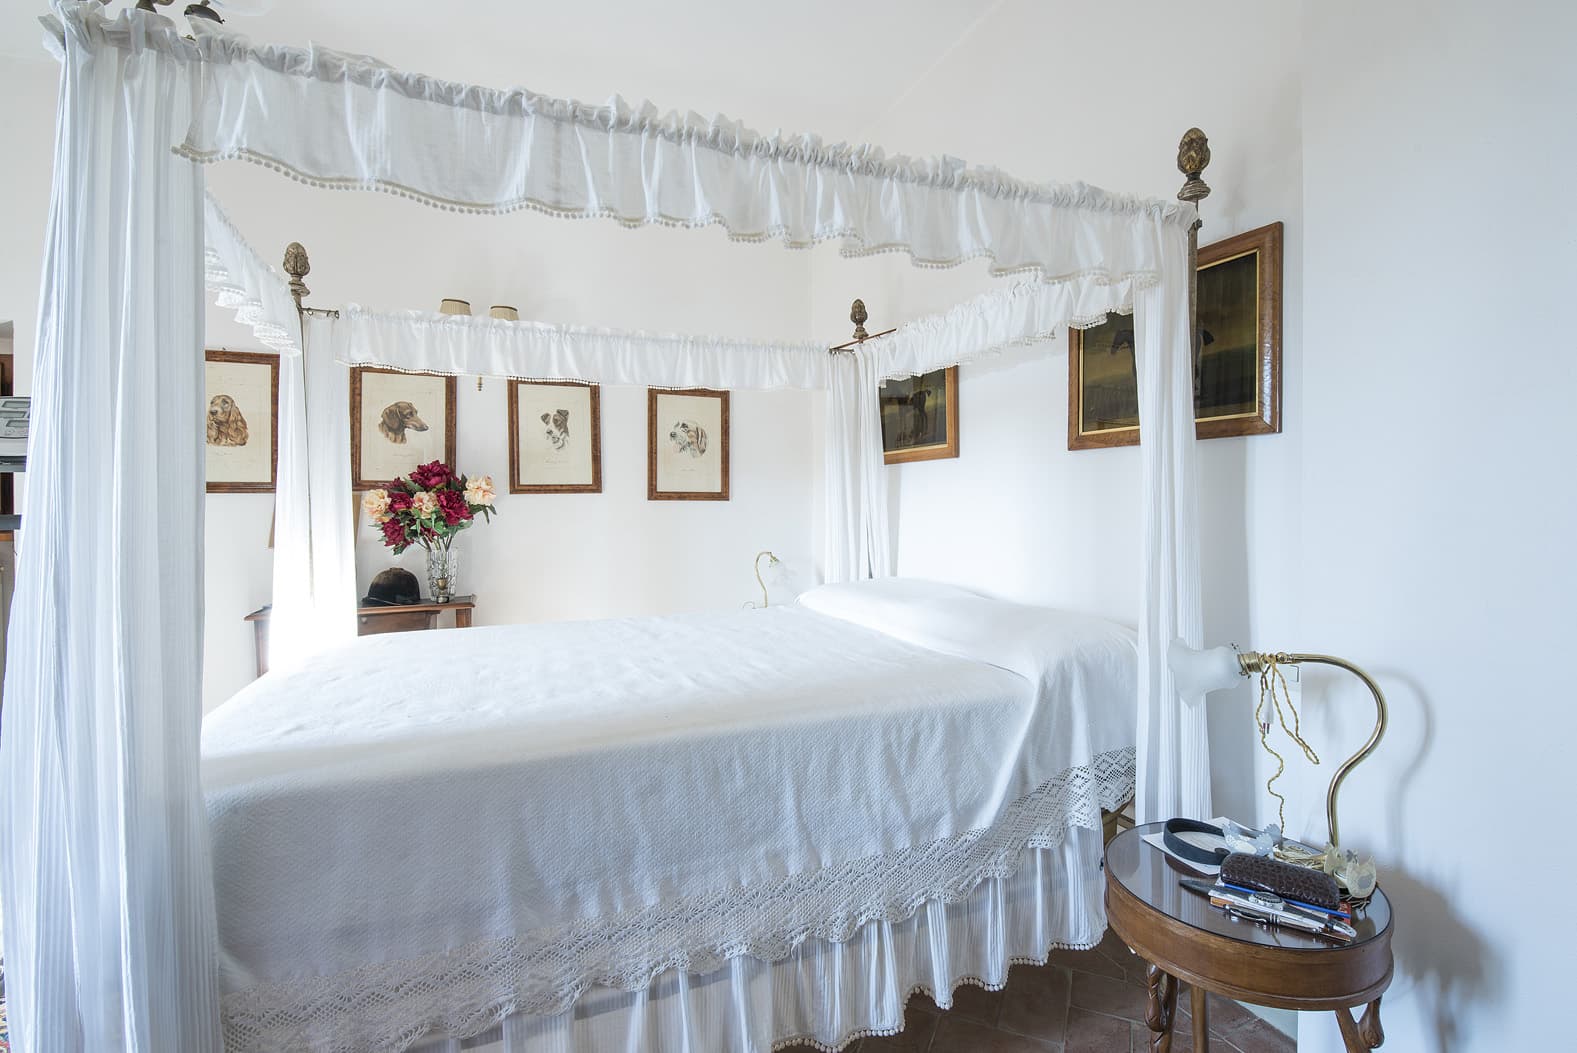  Bedroom Villa For Sale Borgo In Chianti Lp0793 18552ad5782a3e0.jpg